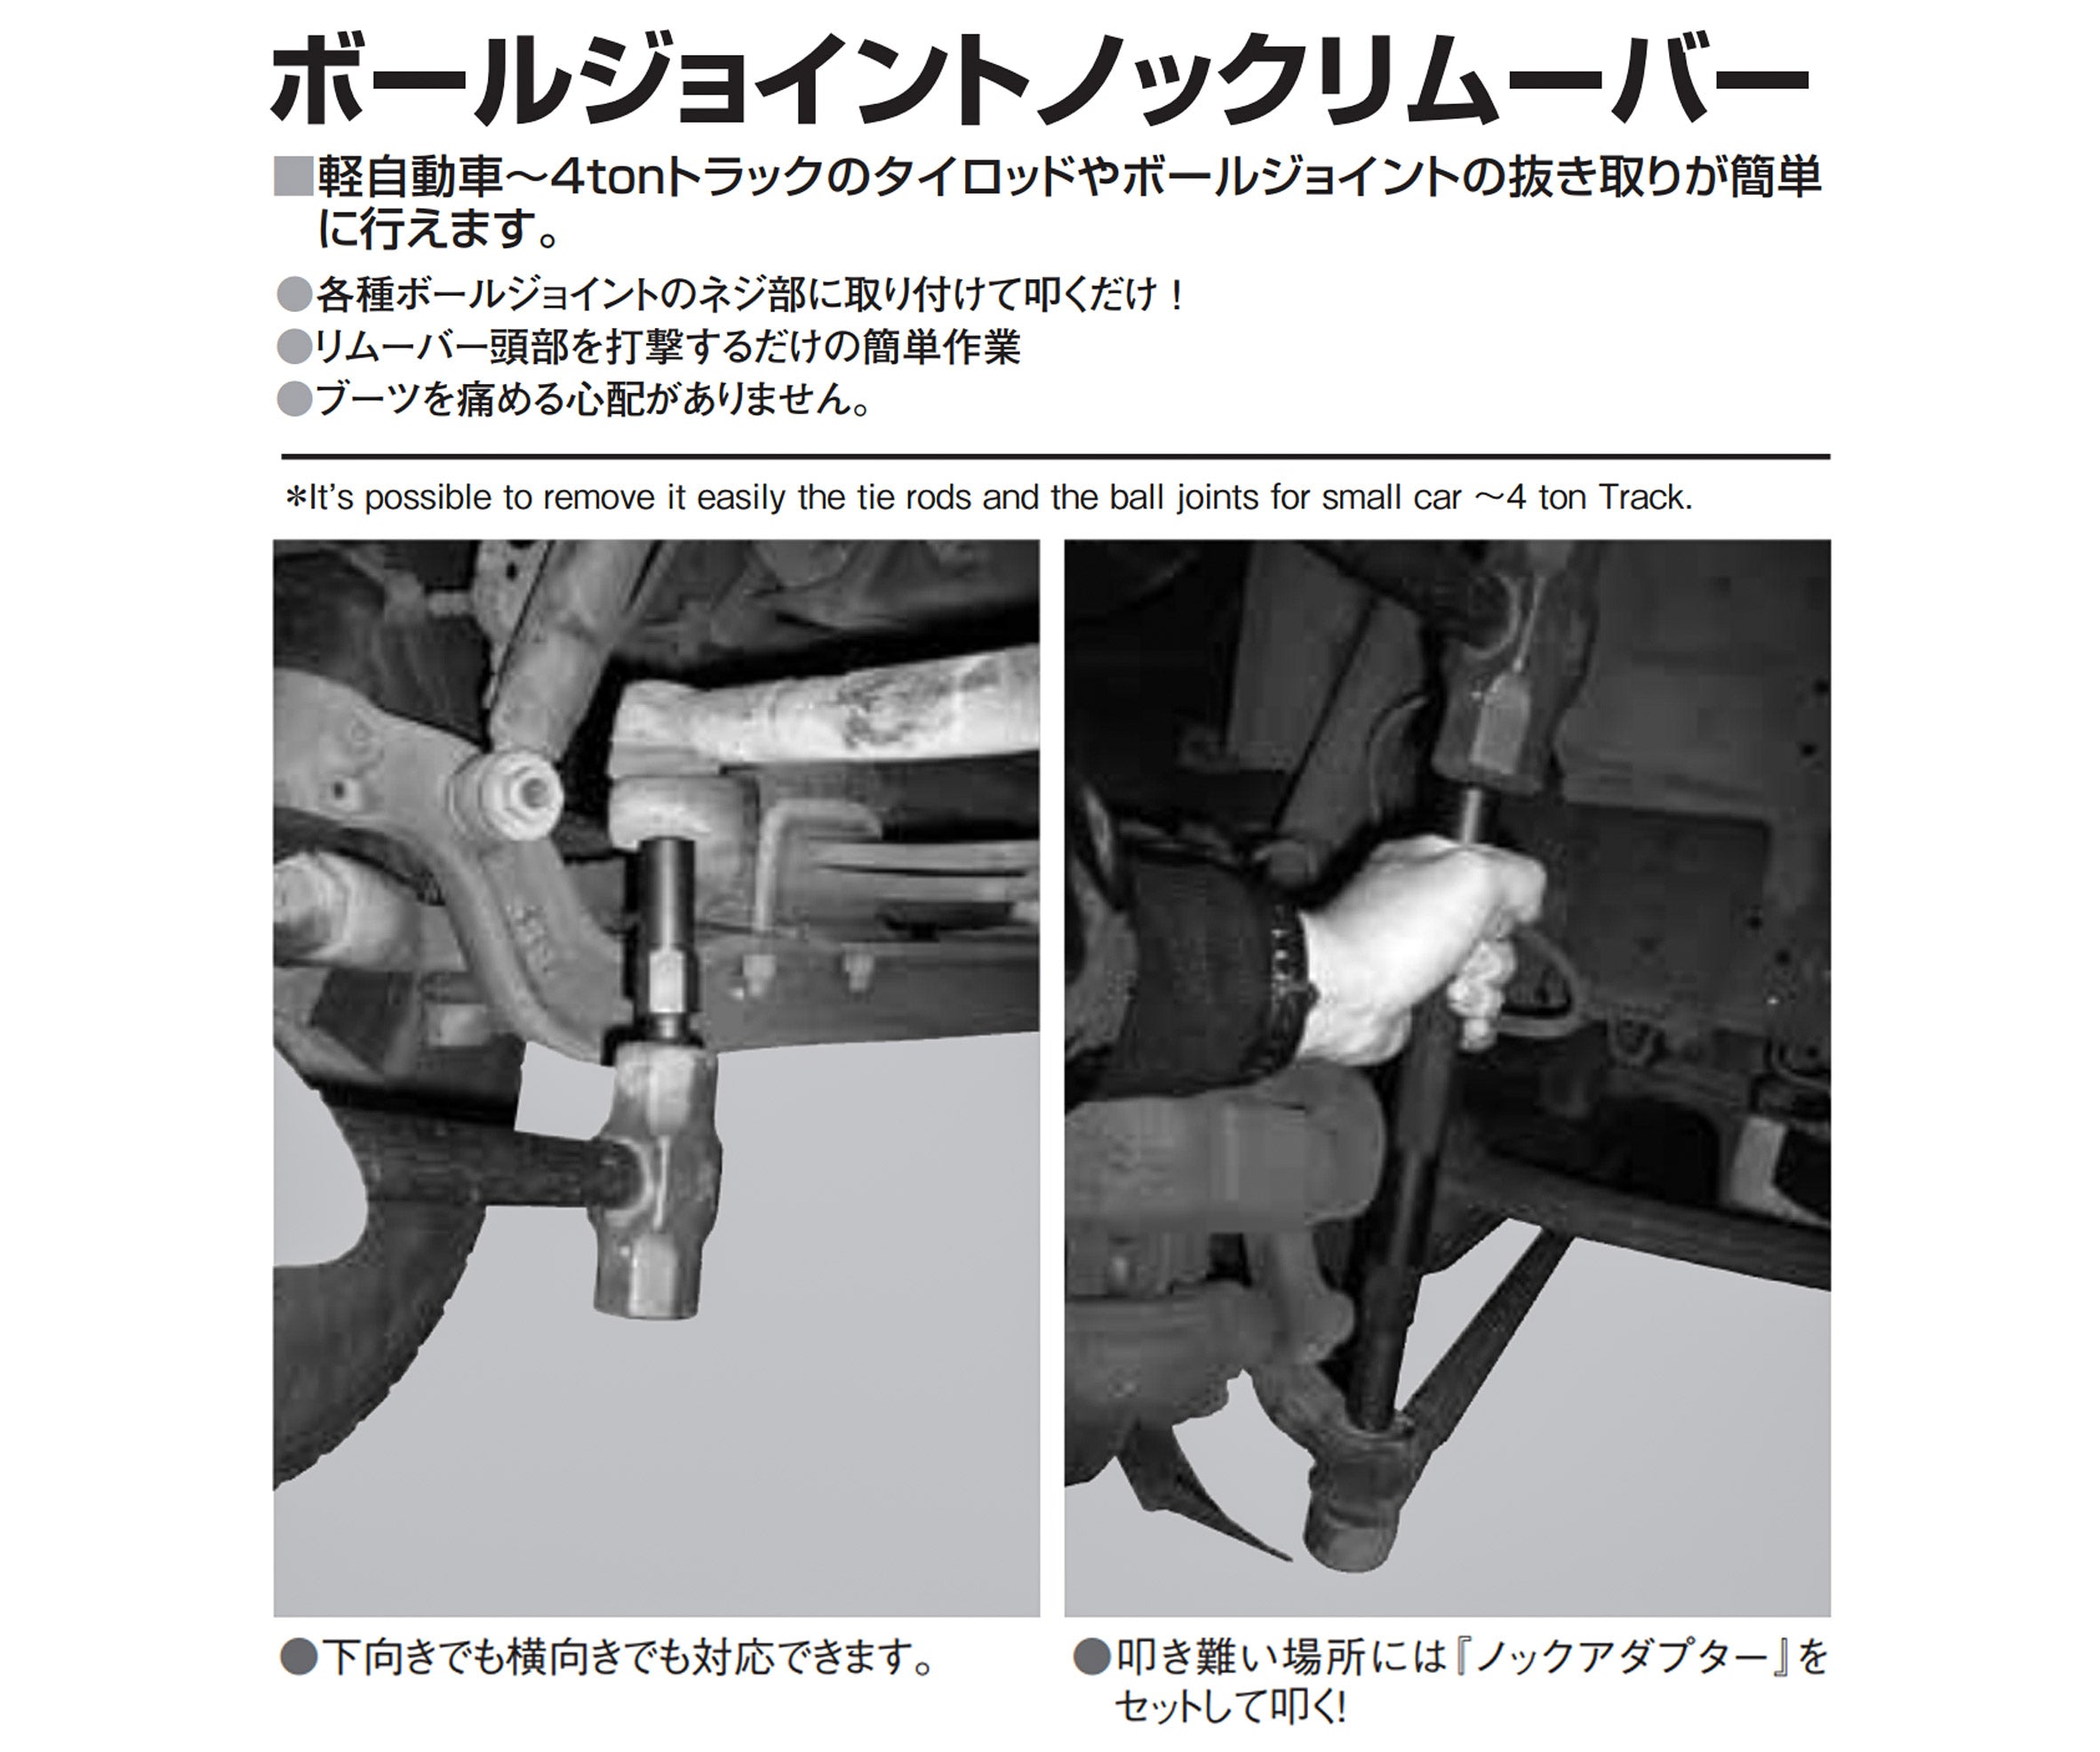 【5月の特価品】KOTO 江東産業 ボールジョイントノックリムーバー INR-420